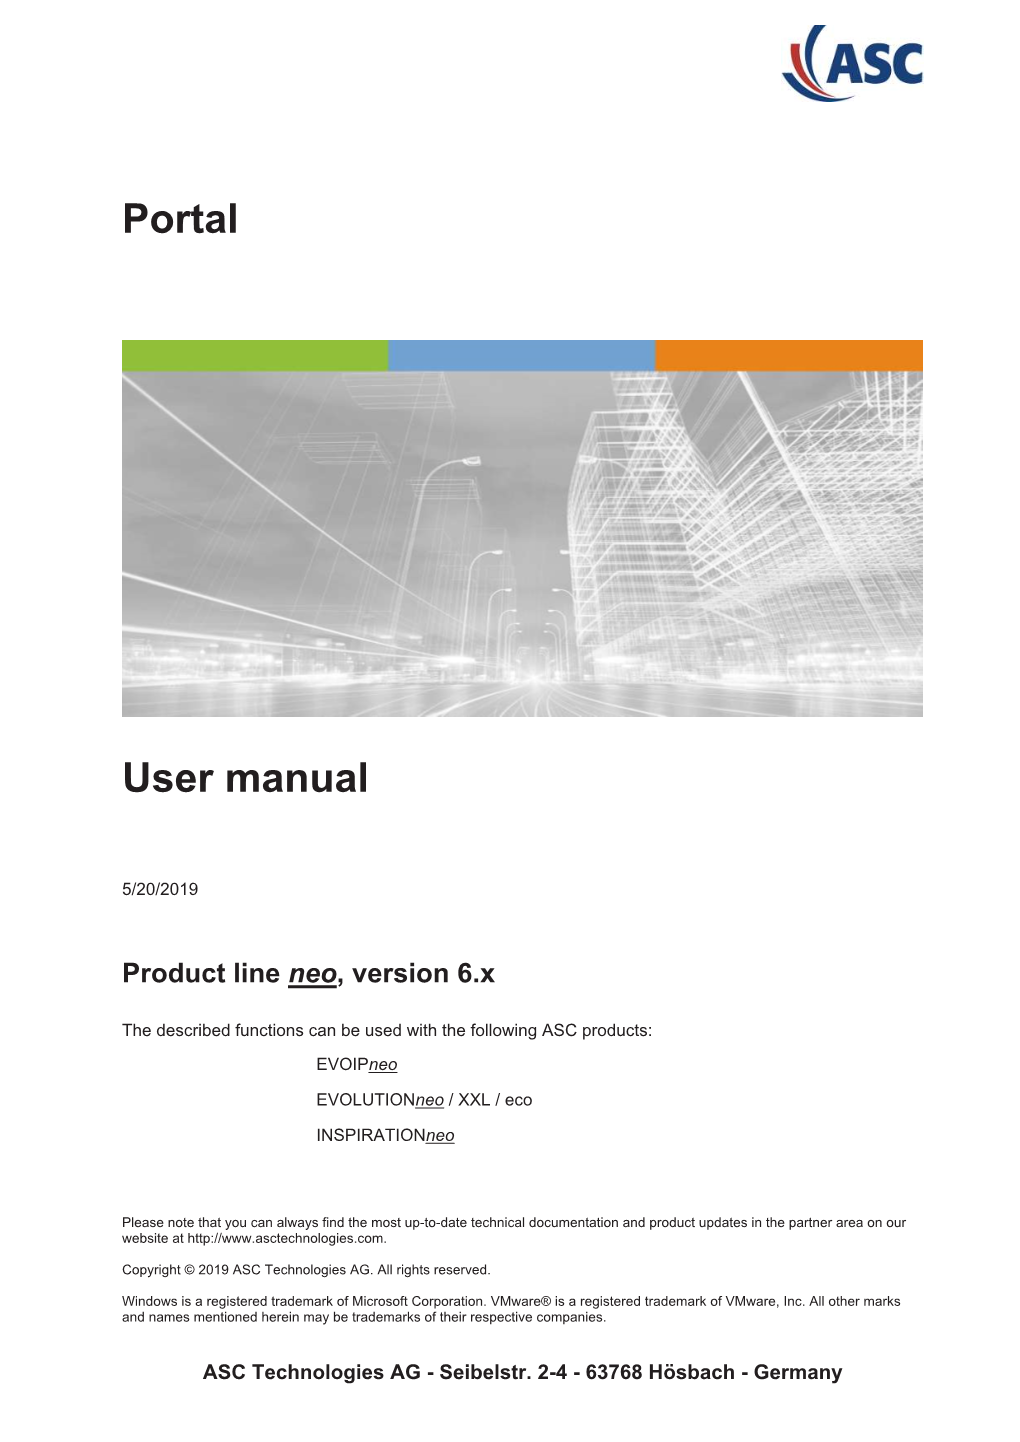 Portal User Manual